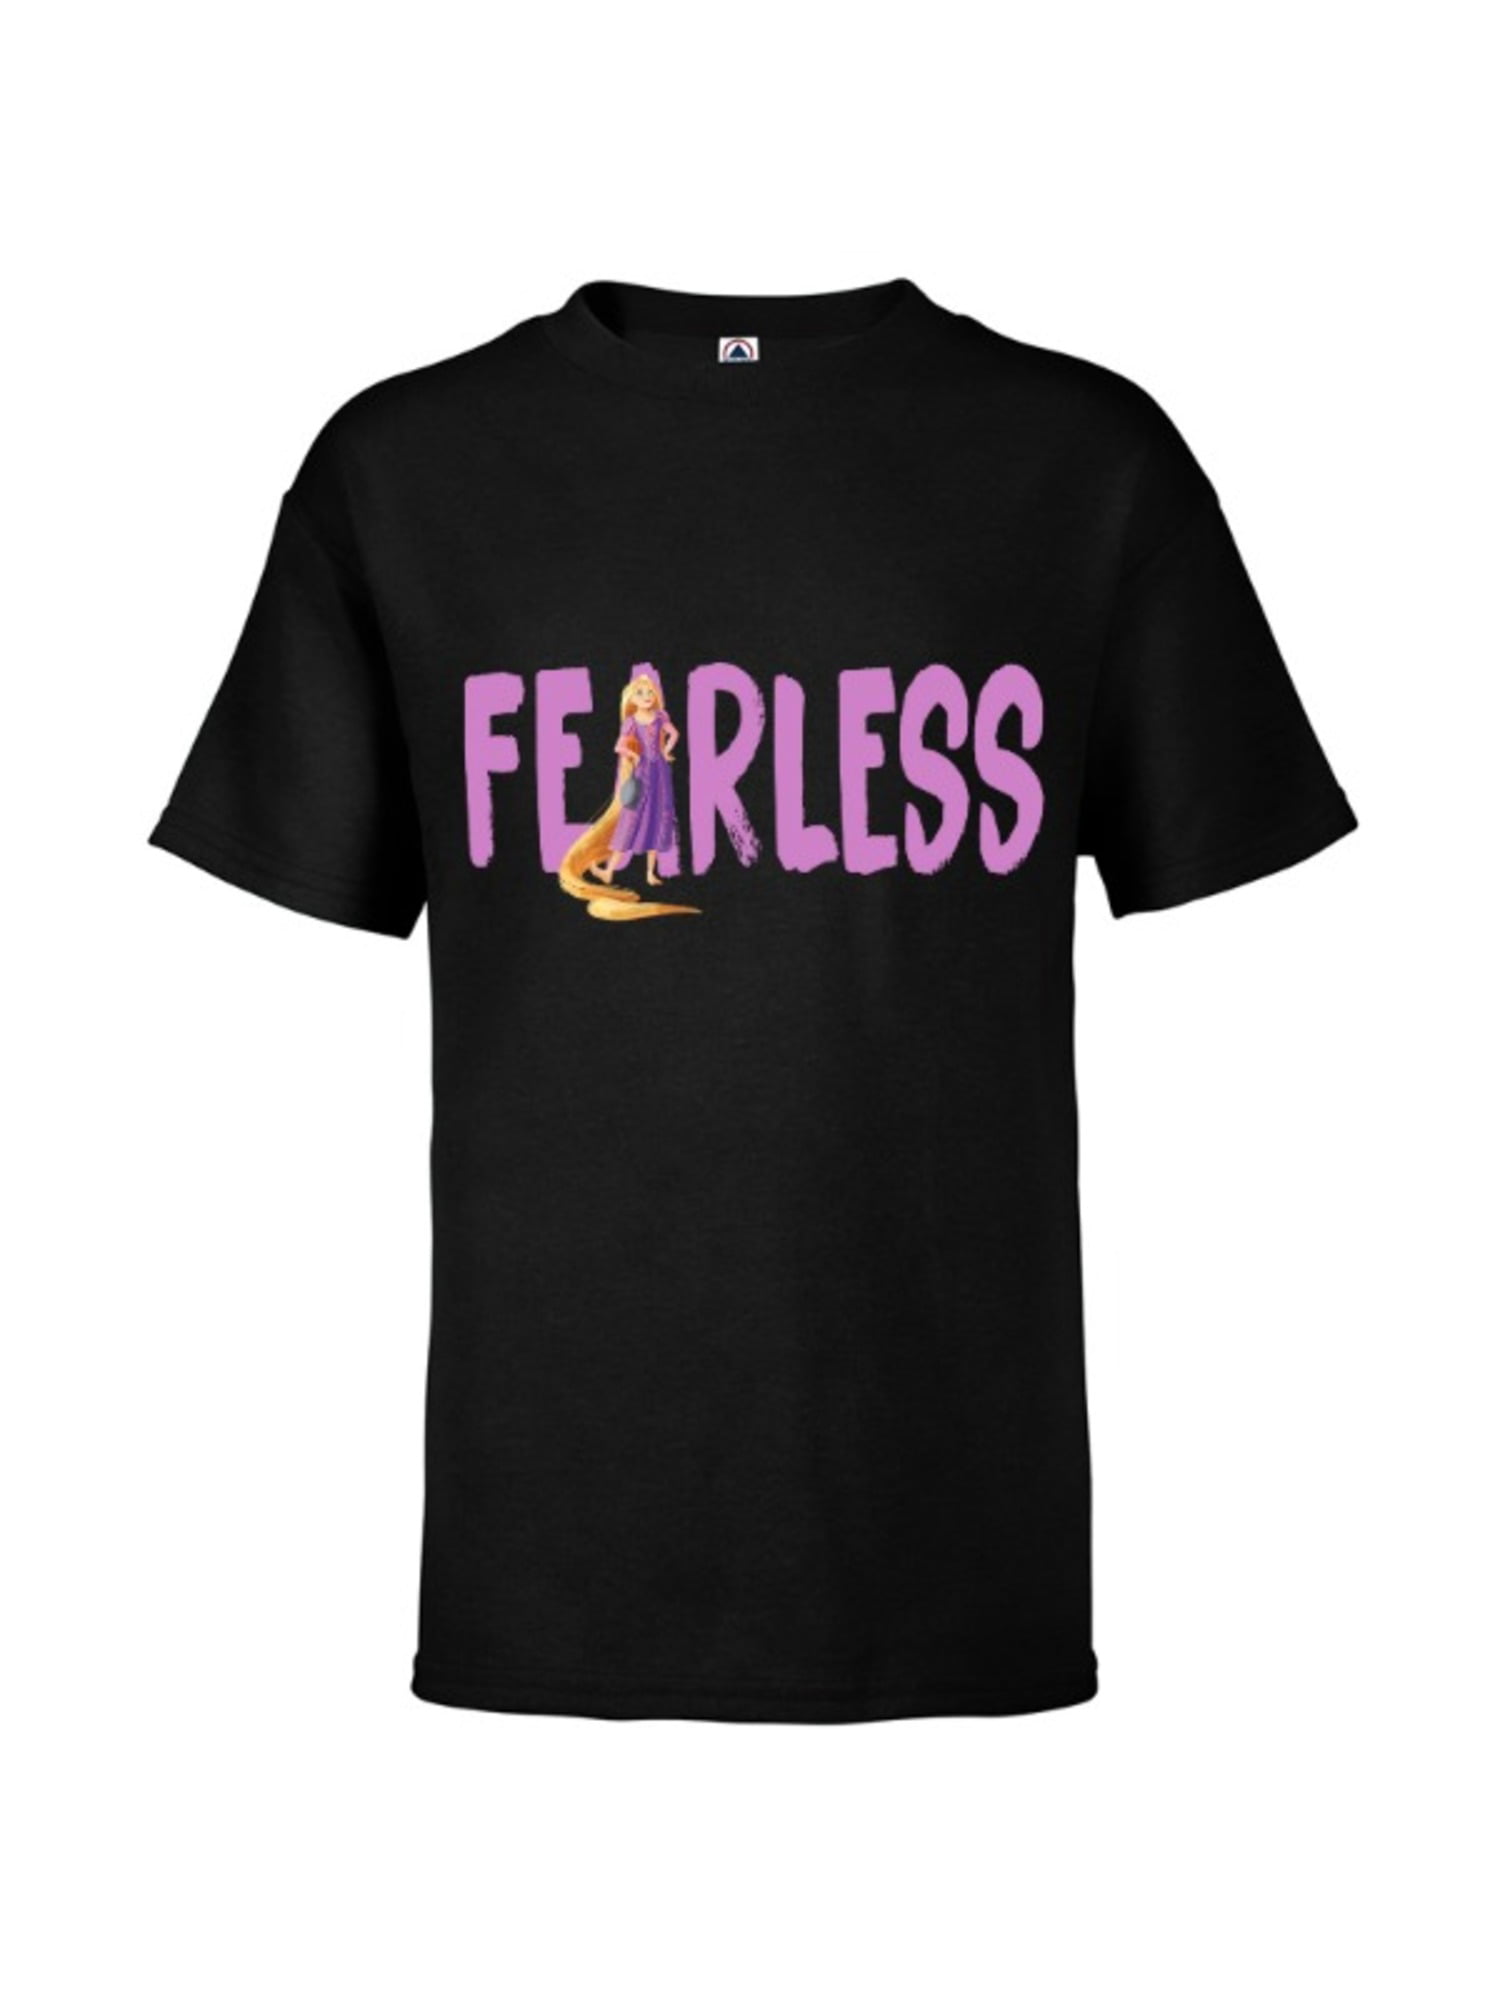 Rapunzel Text Art Short-Sleeve Unisex T-Shirt